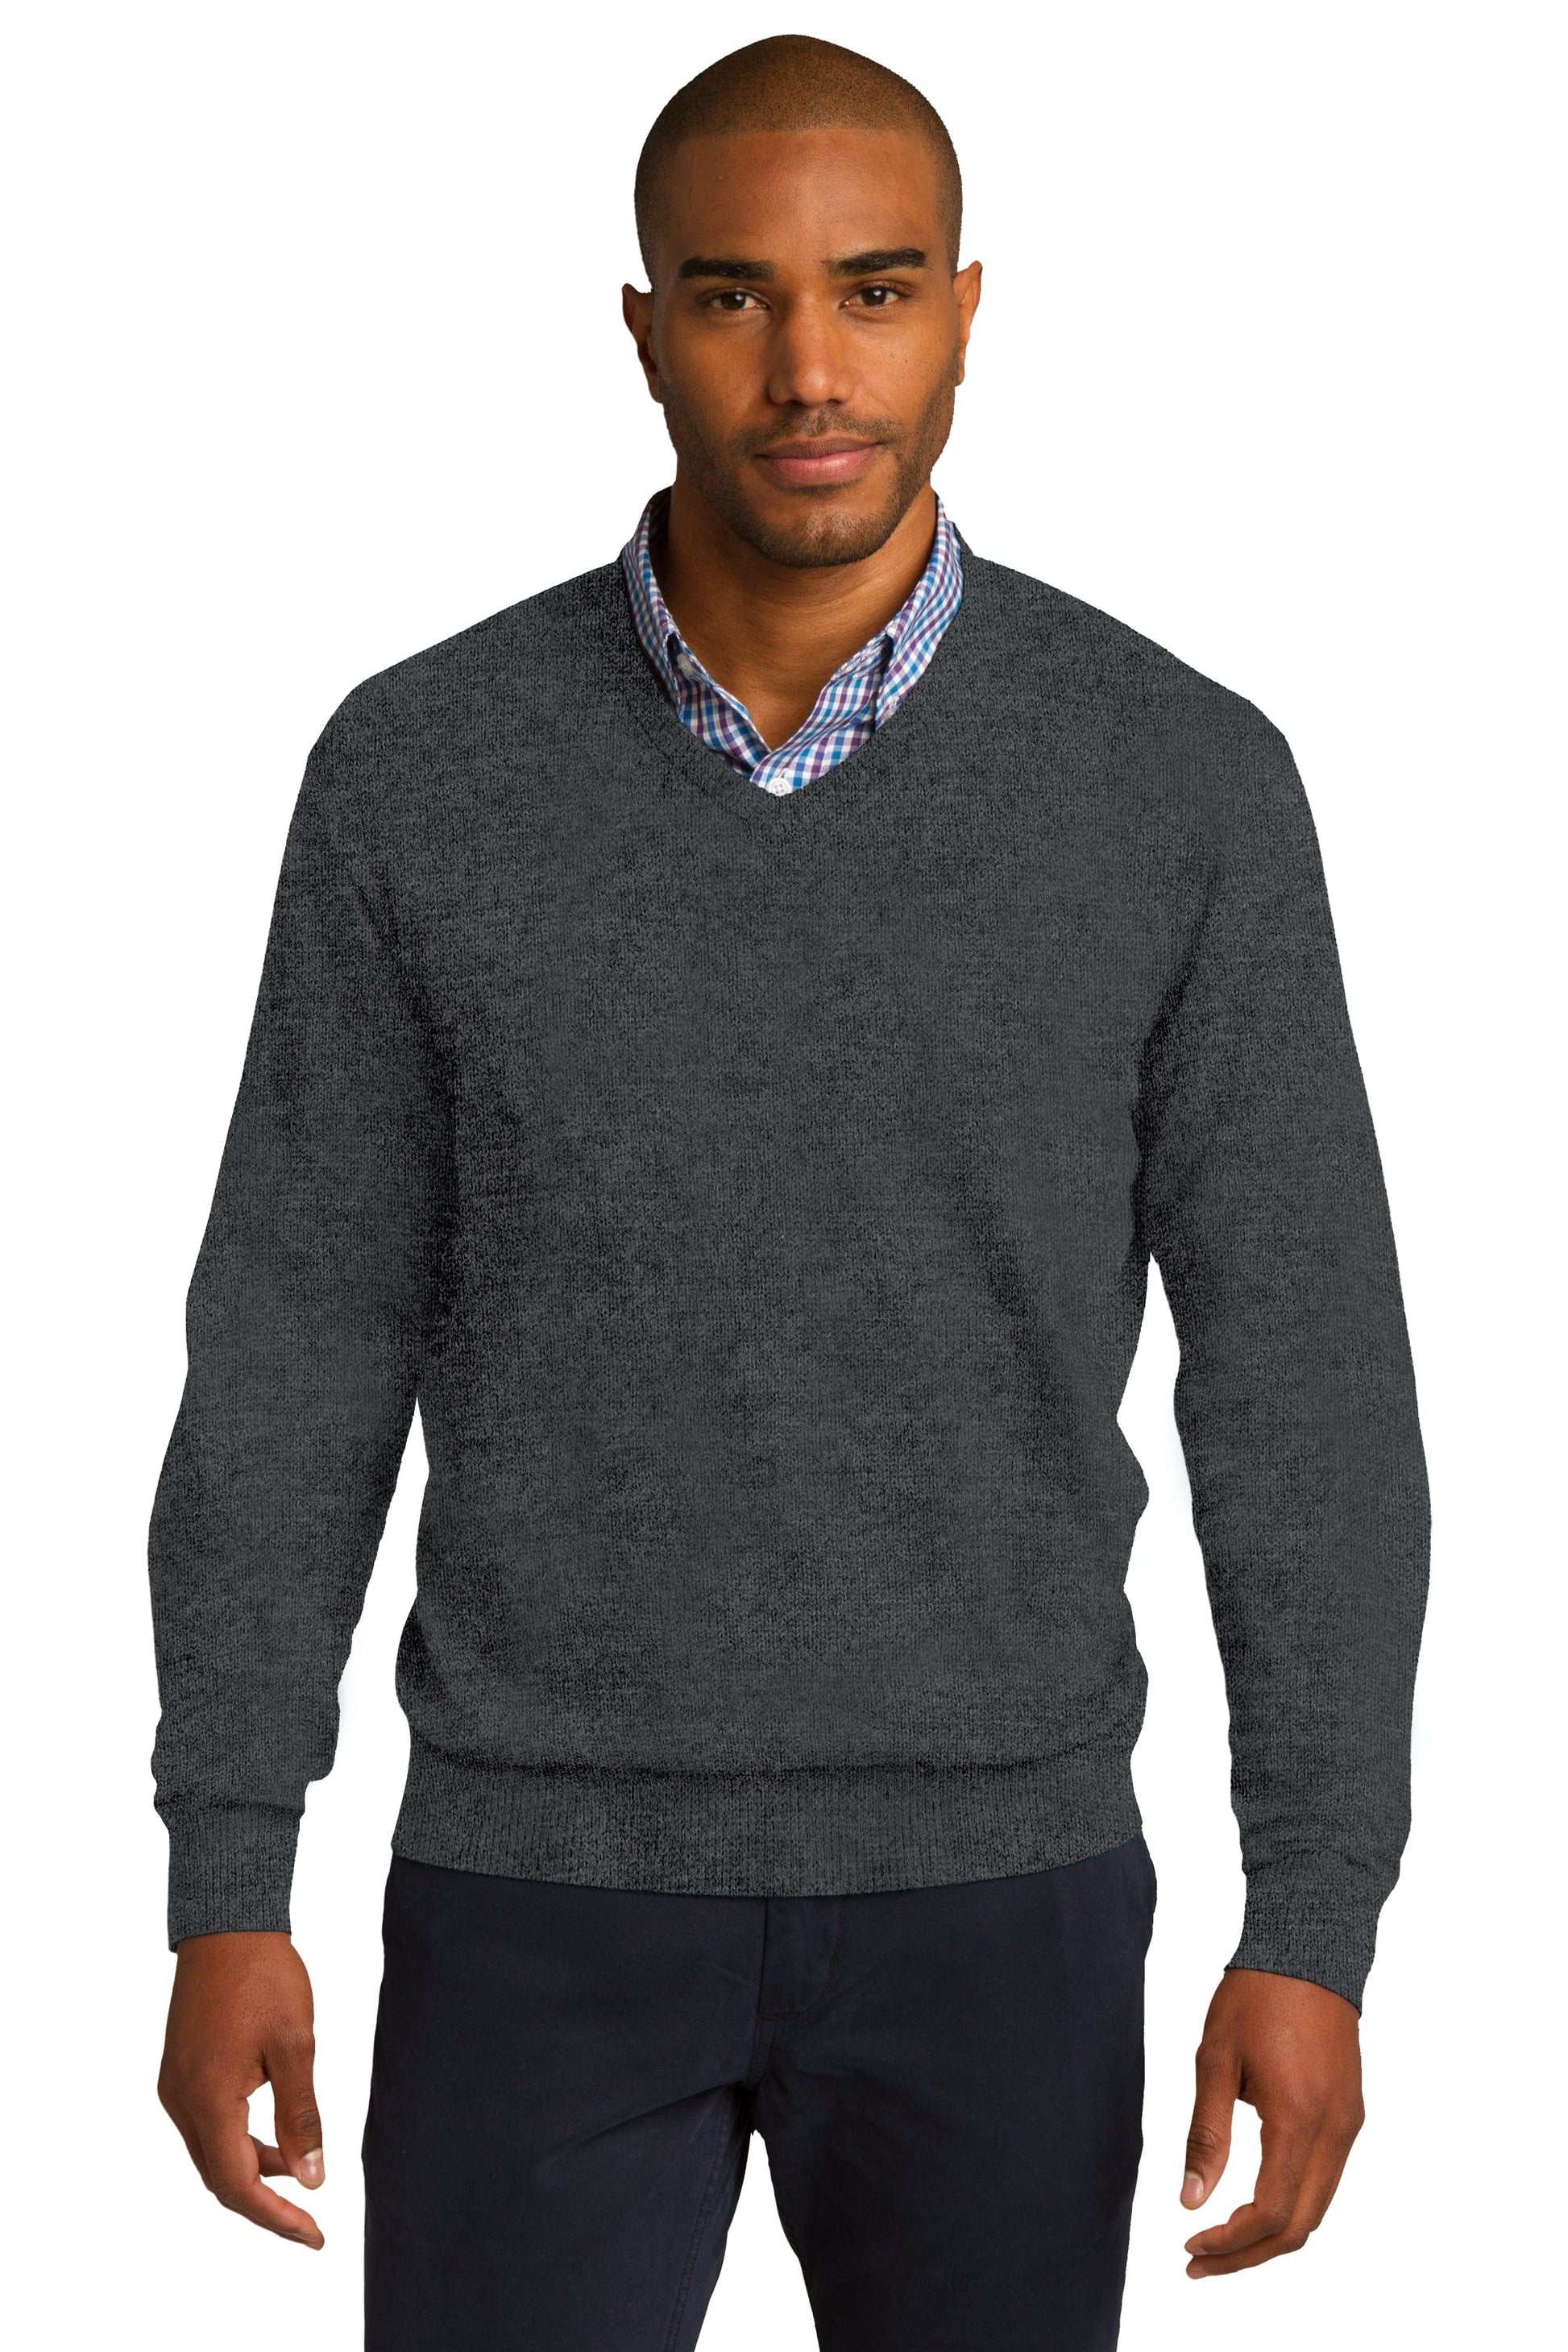 FORtheFIT mens-short-jacket charcoal / Extra-Small Men's Fine Gauge V-Neck Sweater - Navy & Black